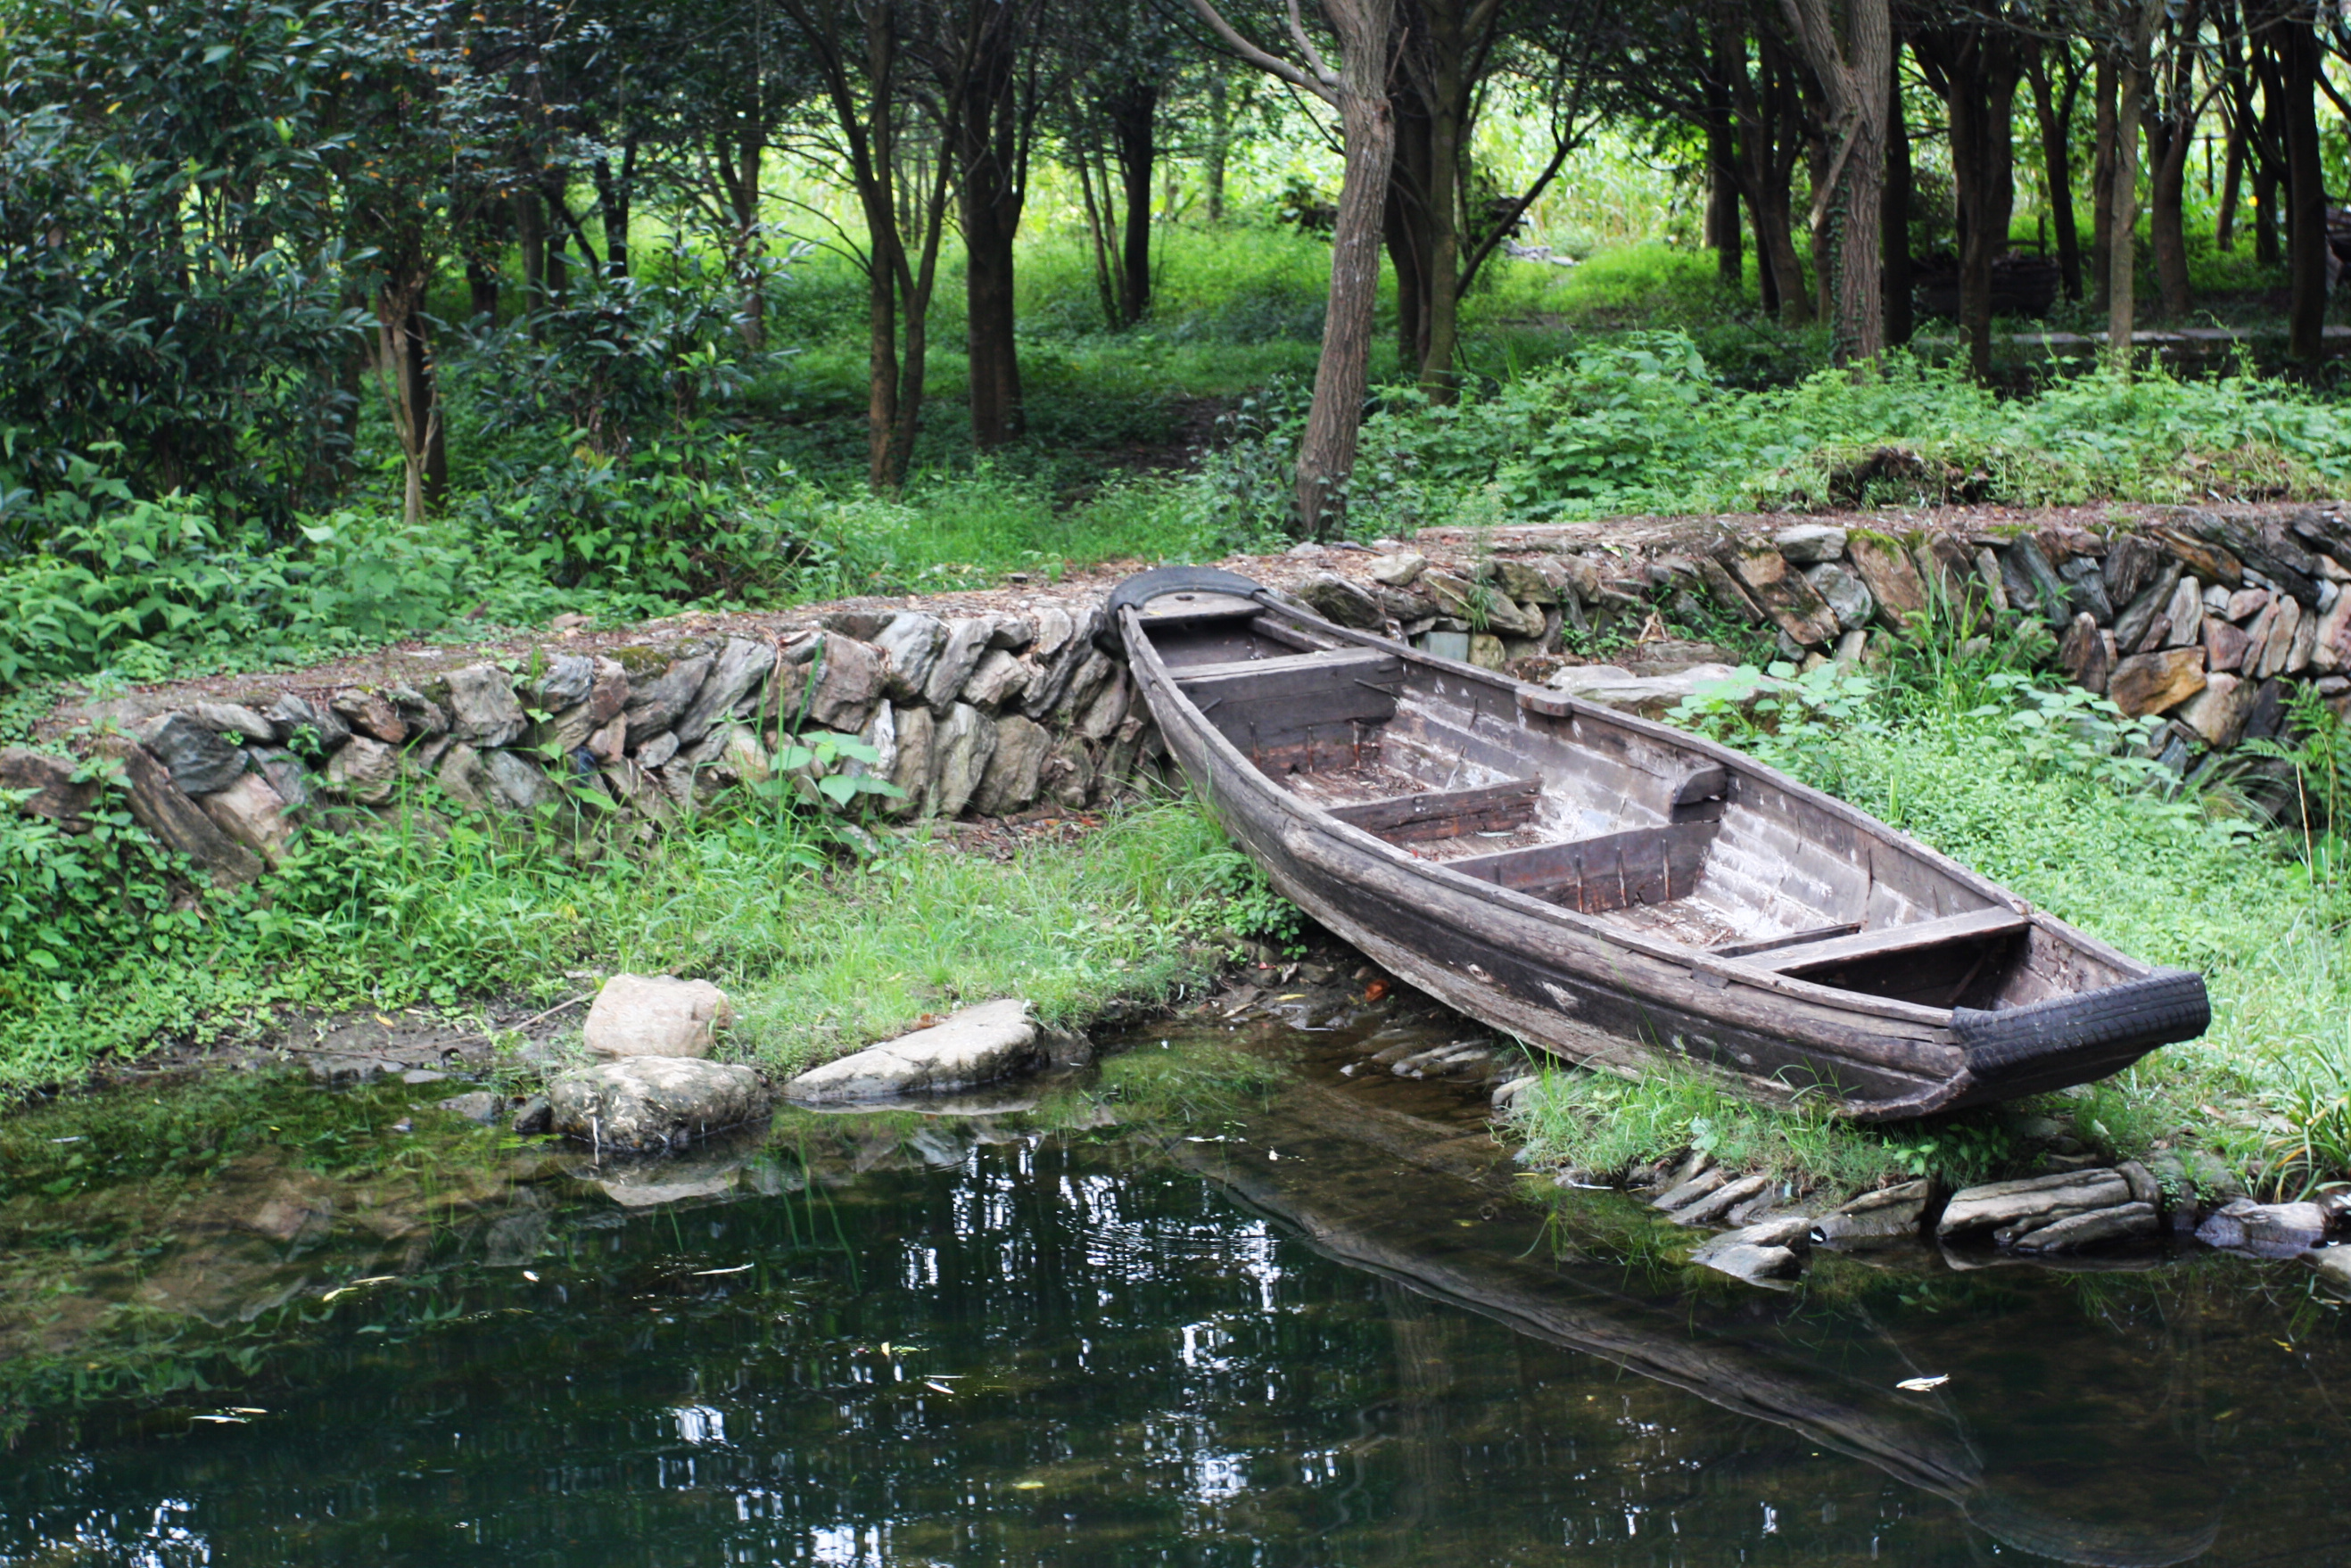 Boat on River at Wuyan village China